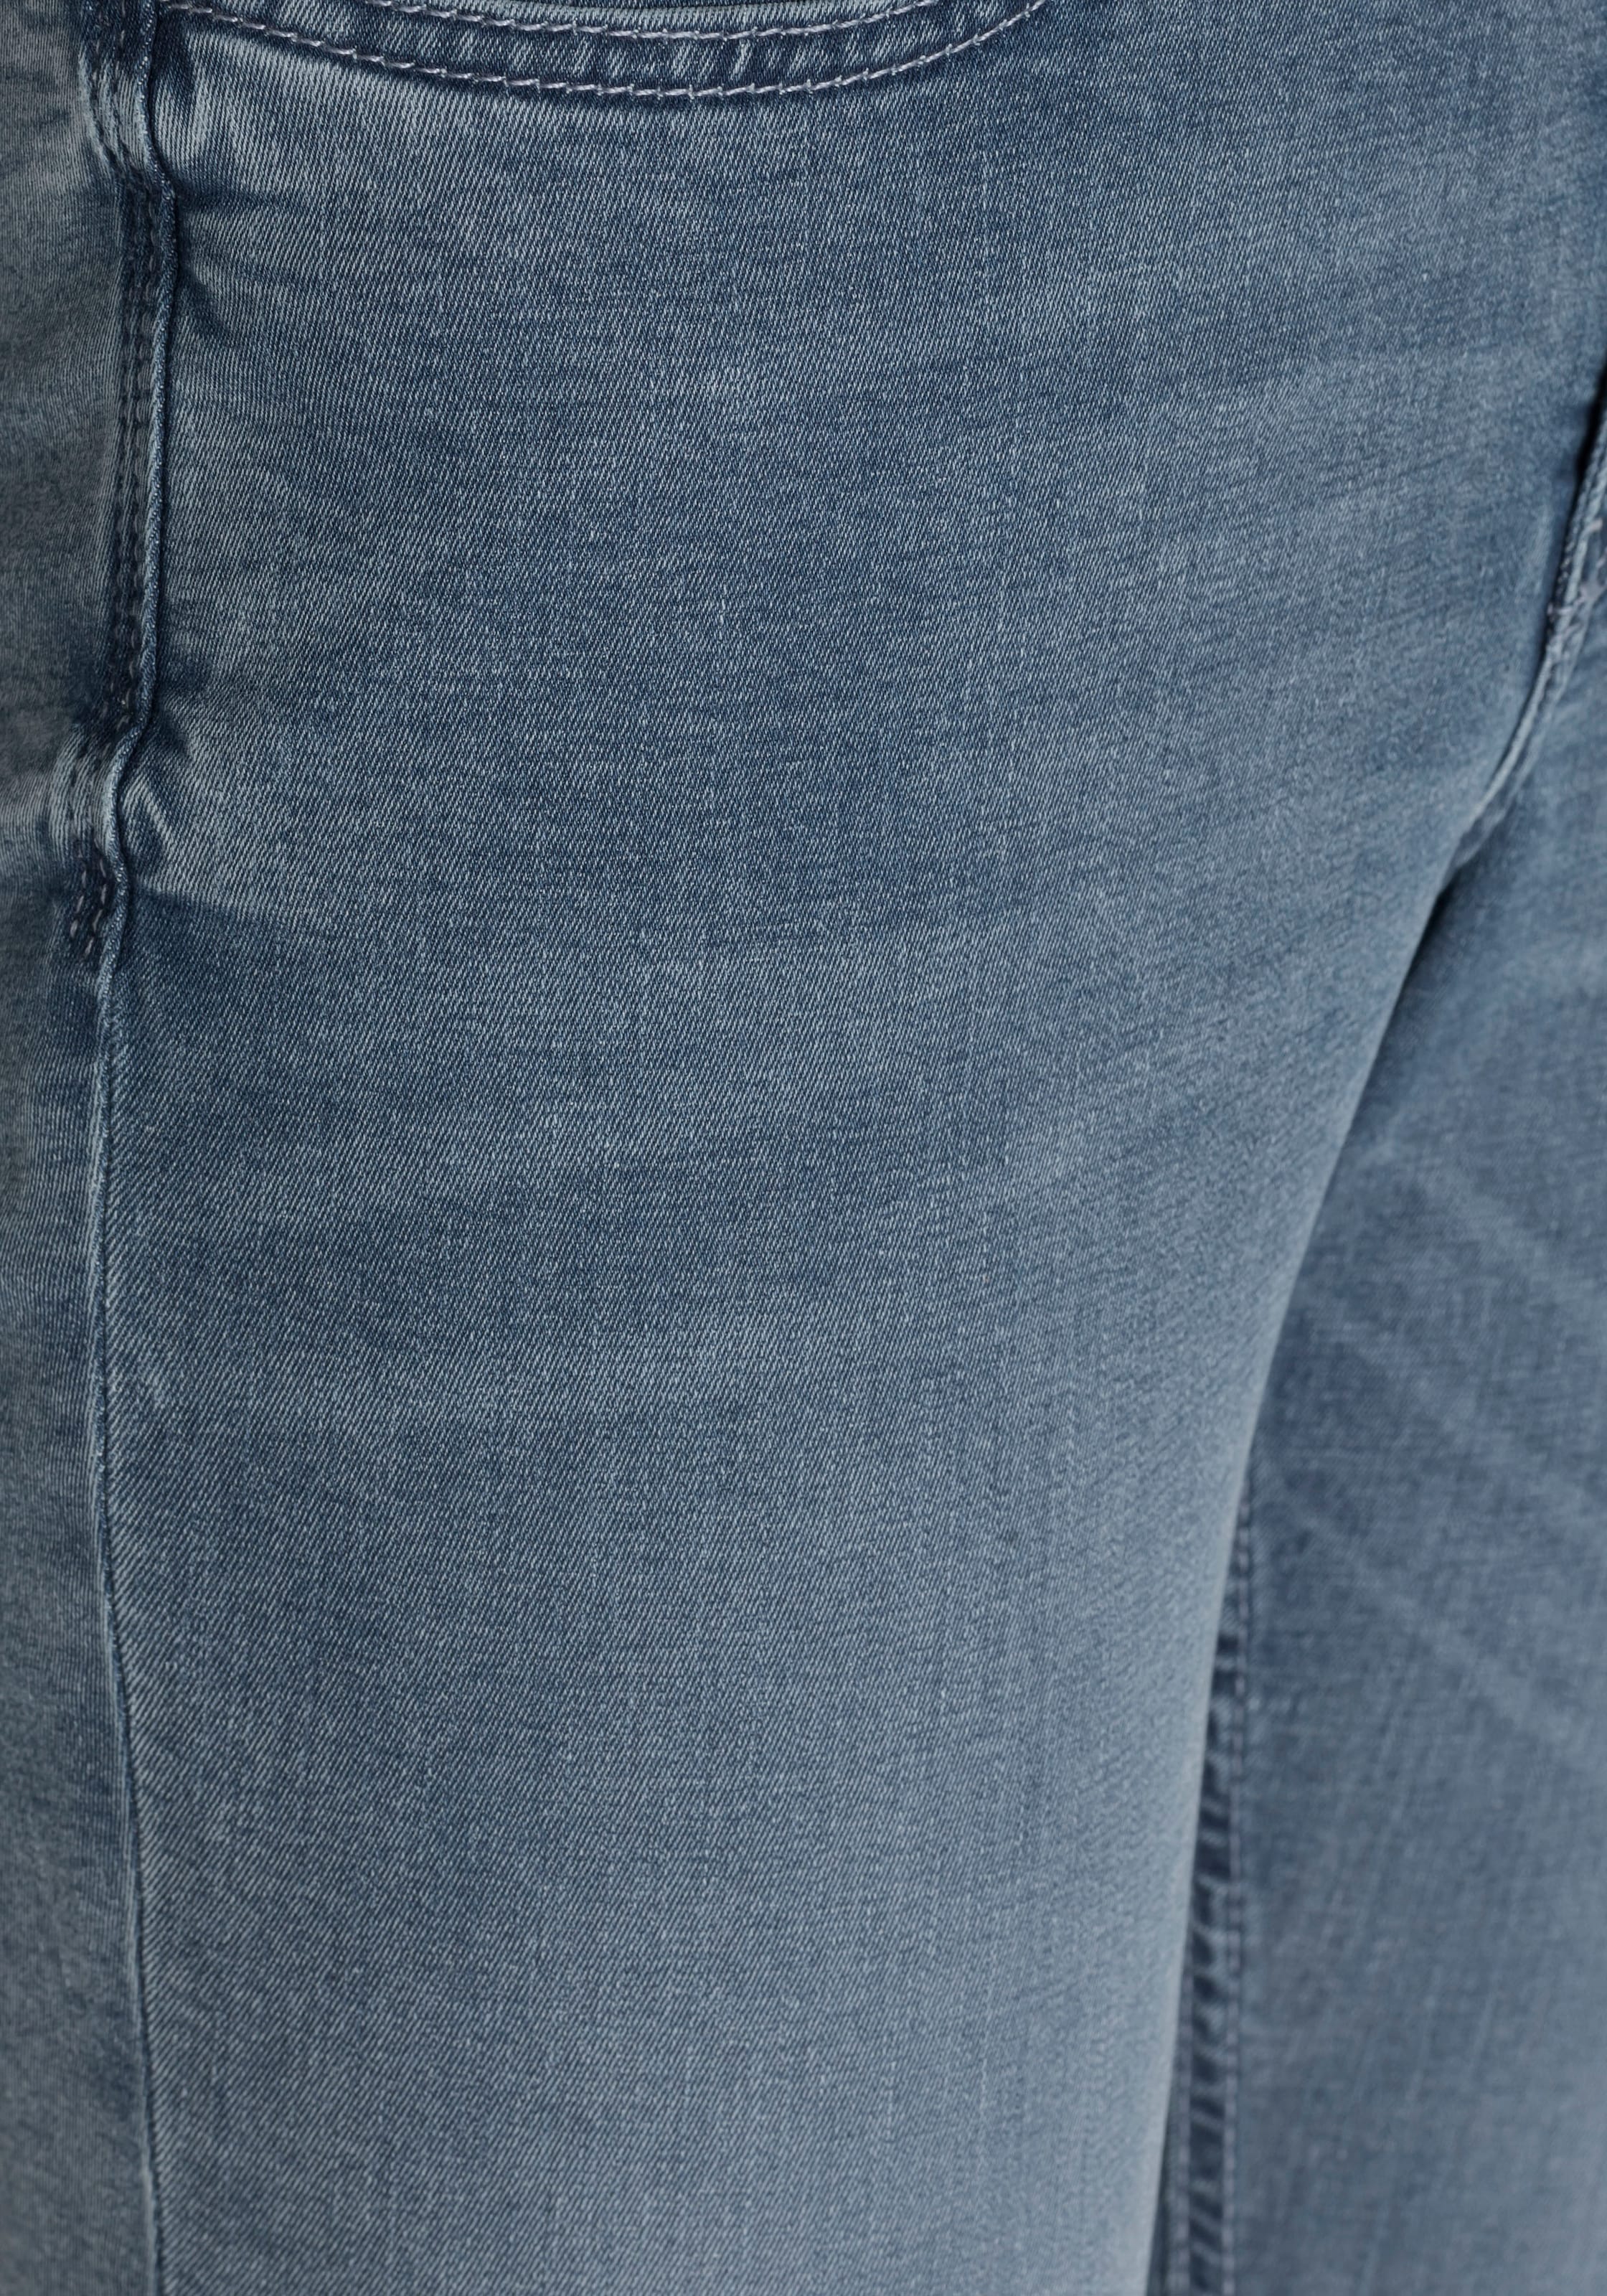 den sitzt kaufen Qualität Tag Power-Stretch MAC ganzen online »Hiperstretch-Skinny«, Skinny-fit-Jeans bequem